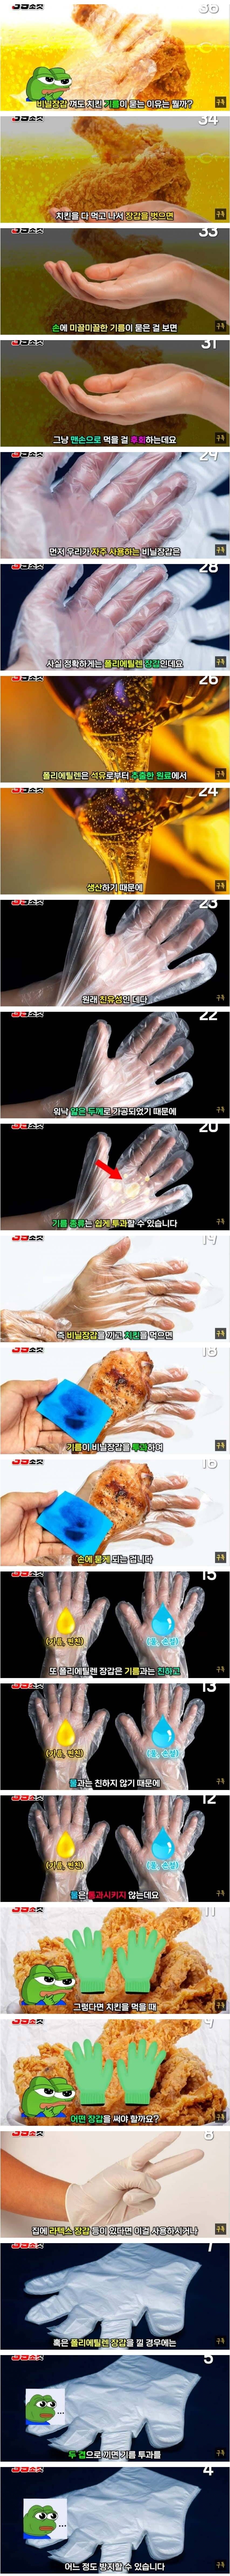 치킨 먹을 때 비닐장갑을 껴도 기름이 묻는 이유 | 인스티즈